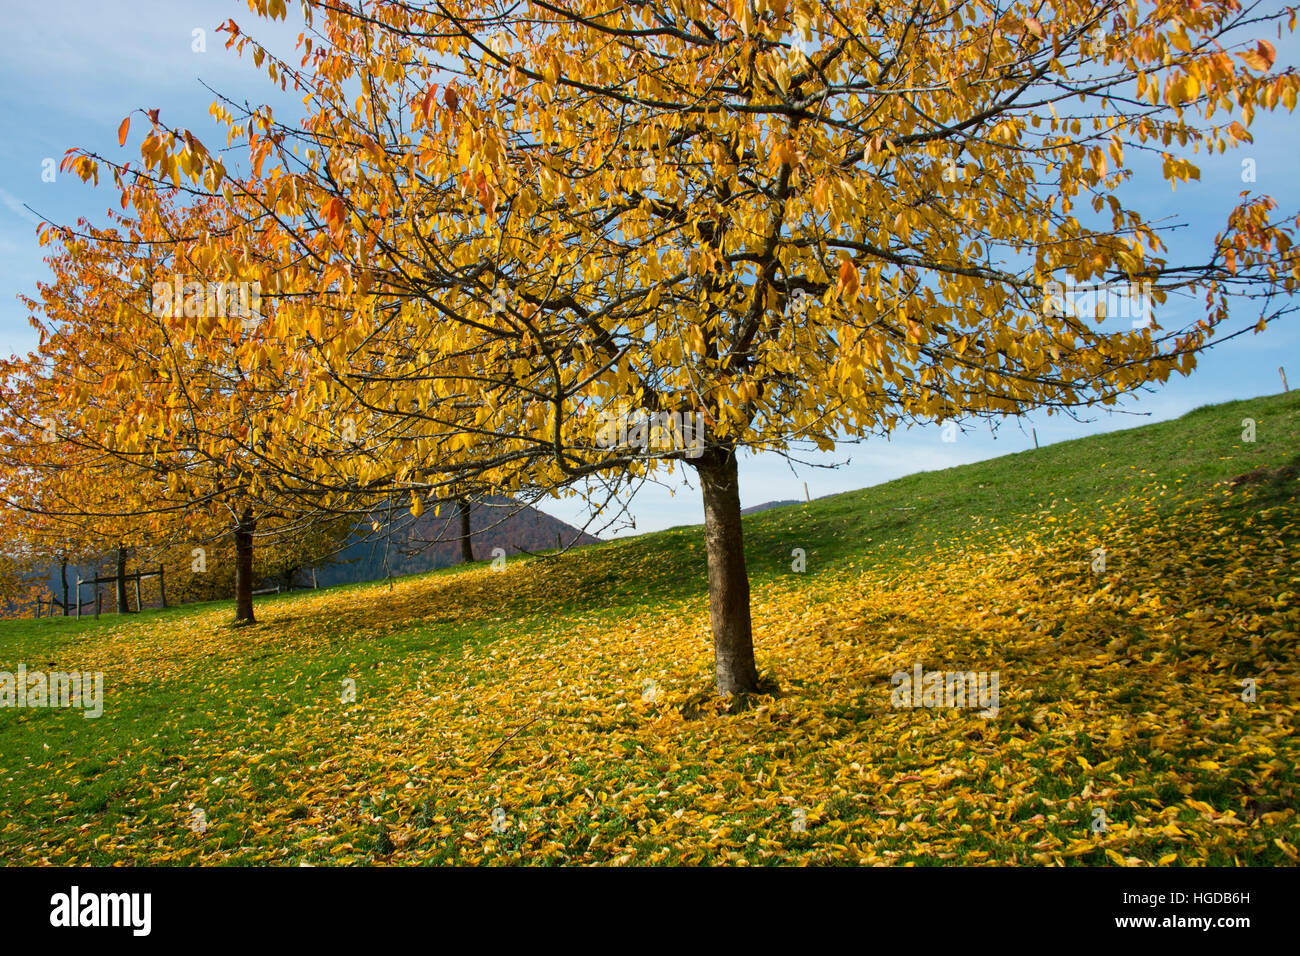 Fruit-trees in autumn Stock Photo